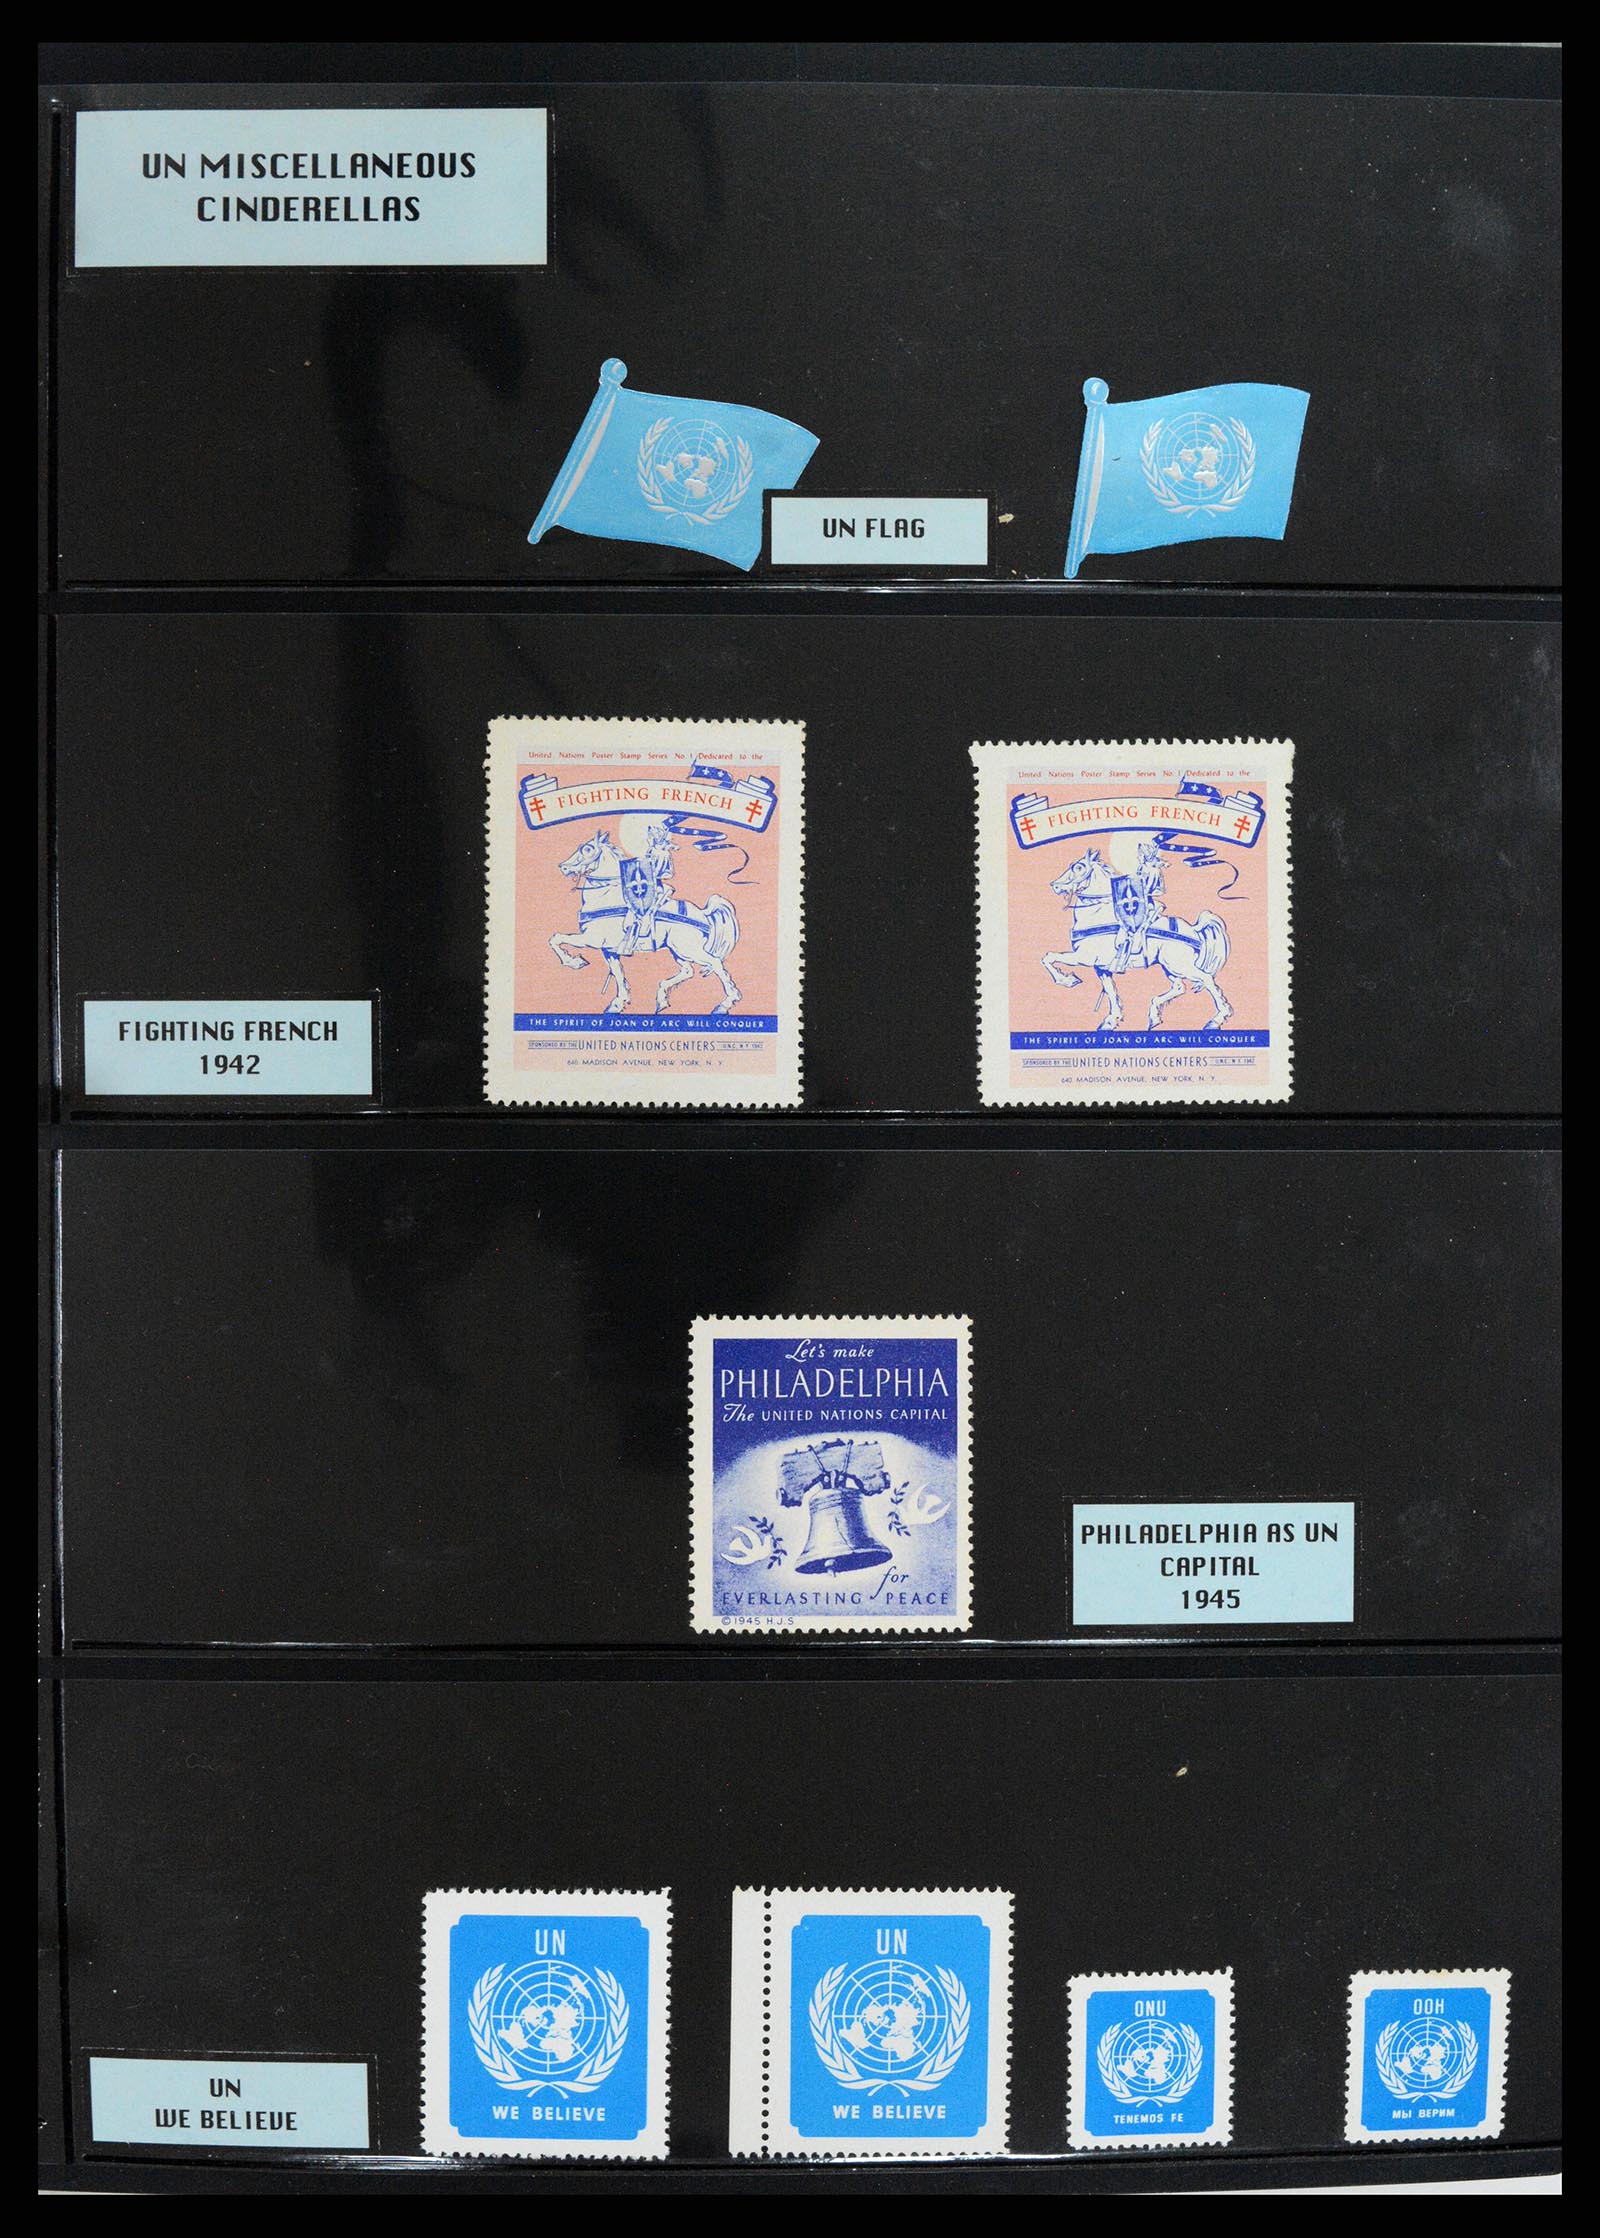 37631 001 - Postzegelverzameling 37631 Verenigde Naties cinderella's 1942-2006.